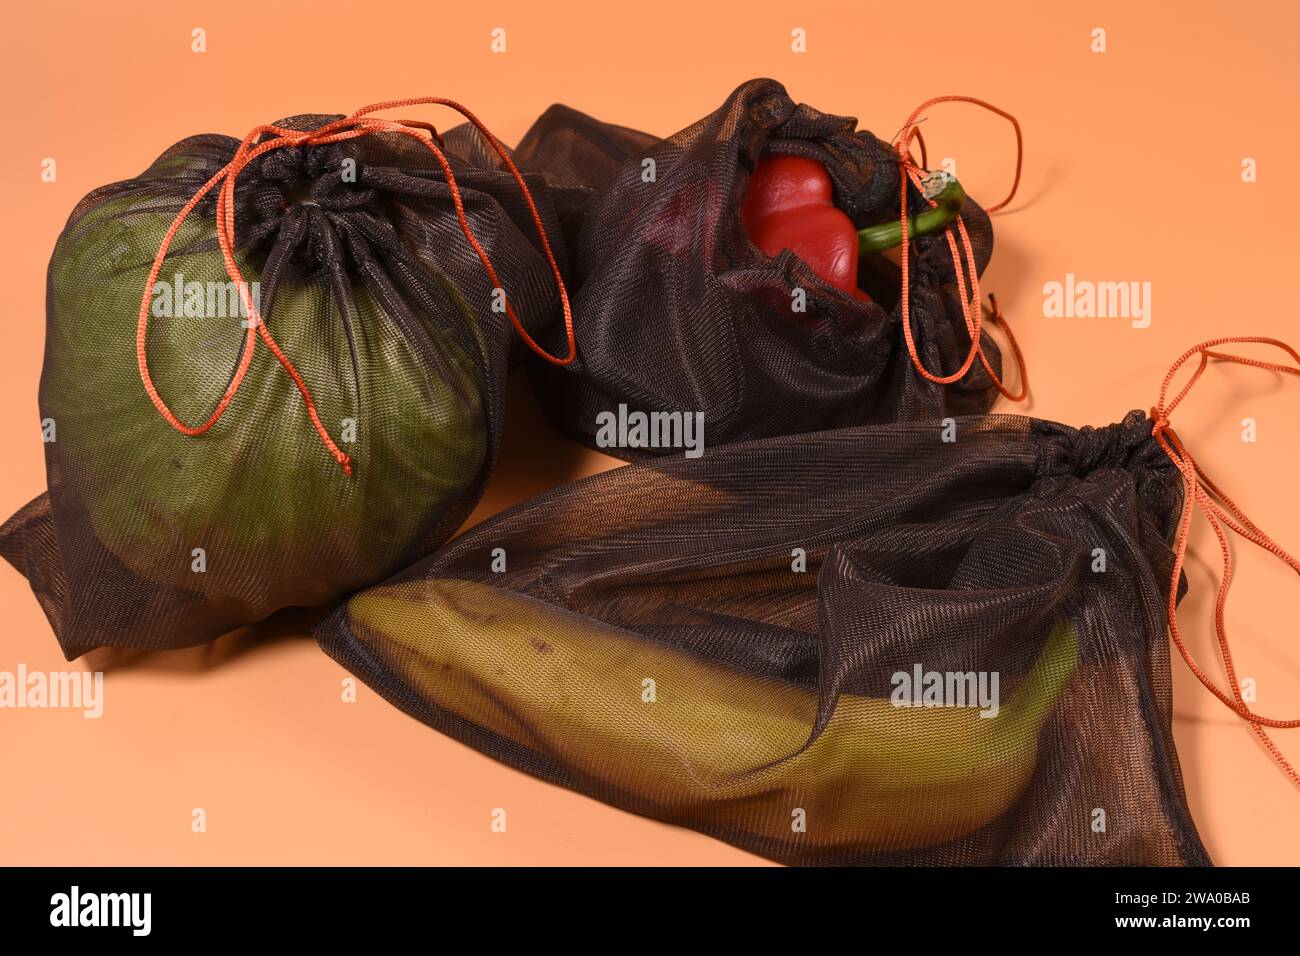 Salat, banana e paprica in sacchetti riutilizzabili. Non utilizzare sacchetti di plastica Foto Stock